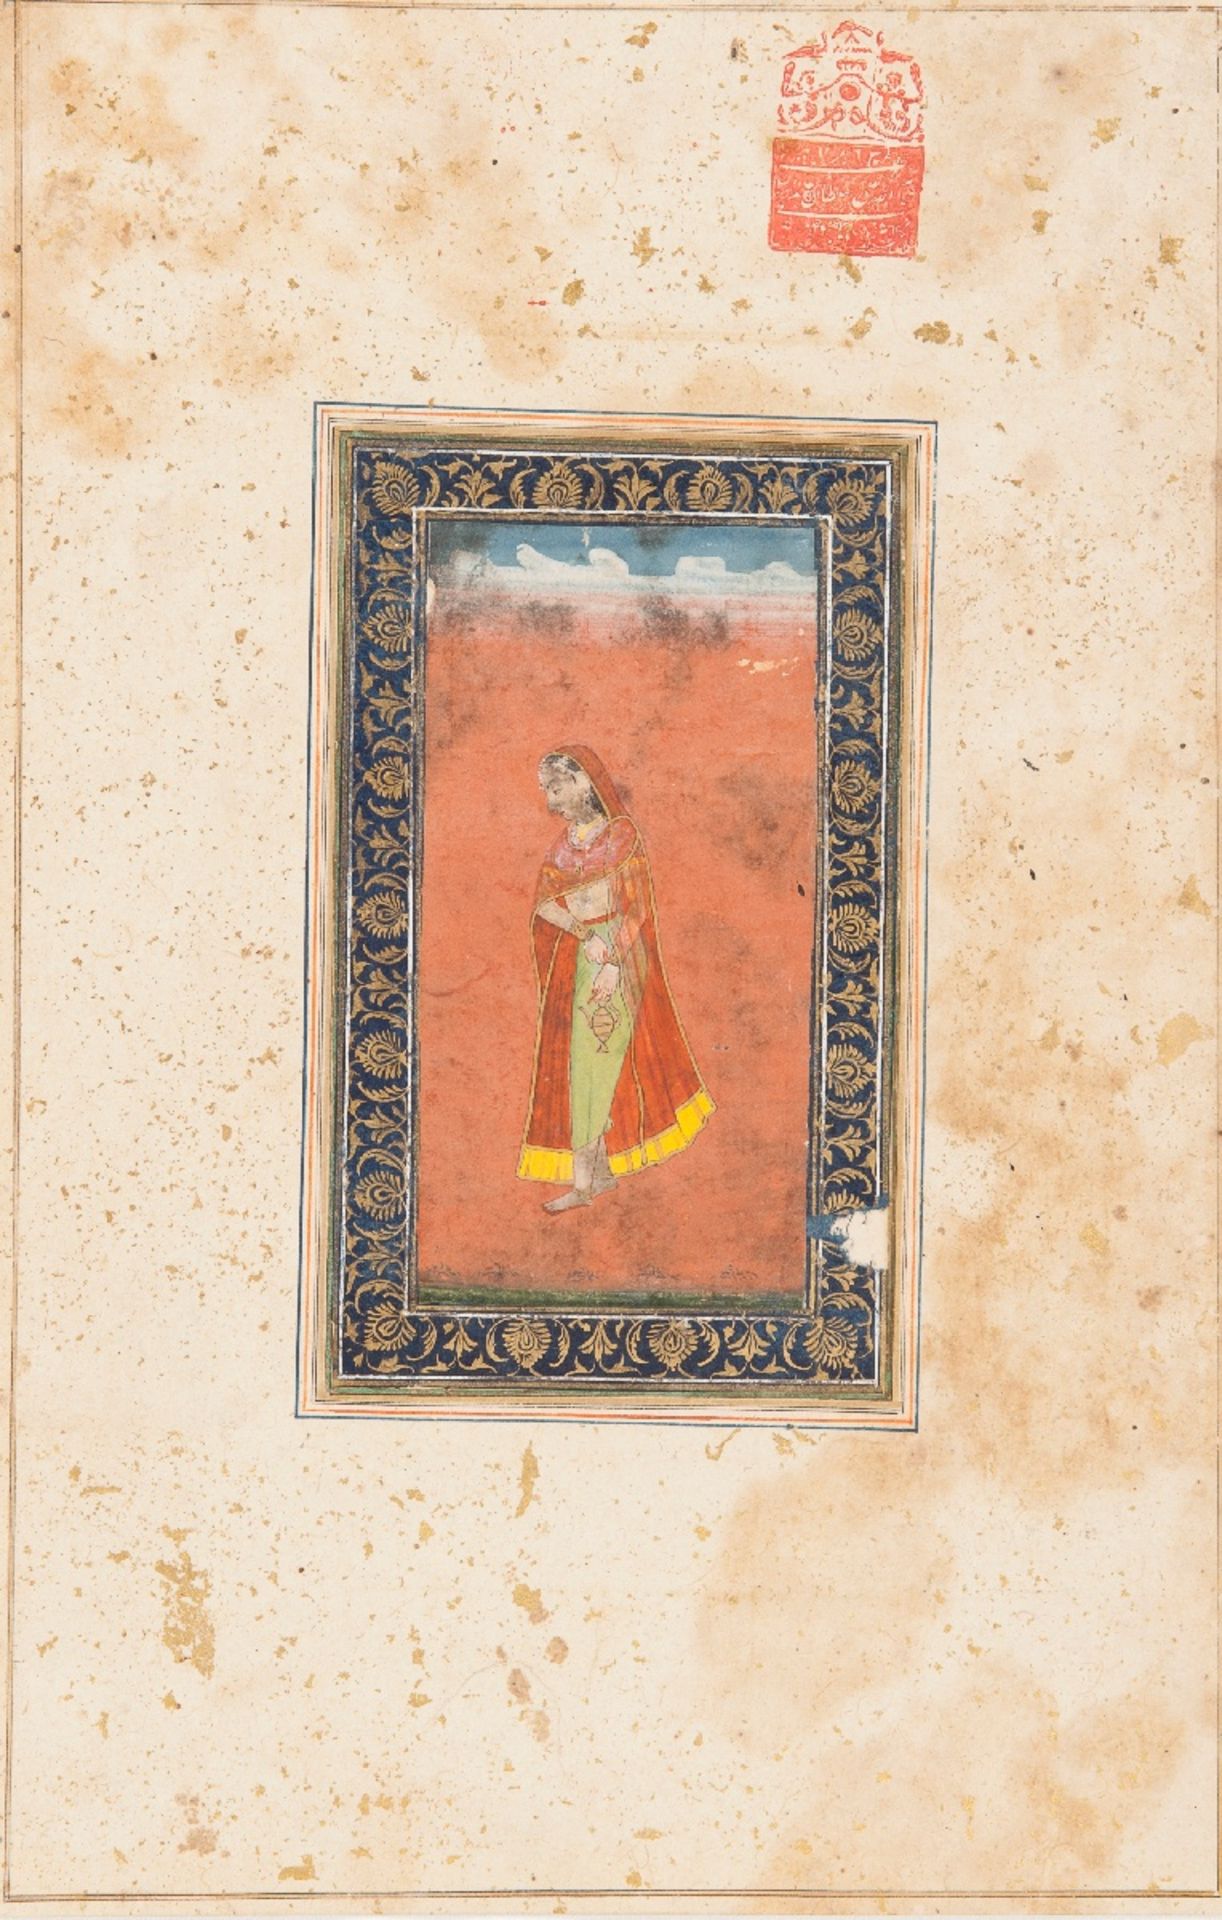 DAME MIT WASSERKÄNNCHEN
Malerei mit Farben und Gold auf Papier. Indien, 18./19. Jh.Sehr verhalten in